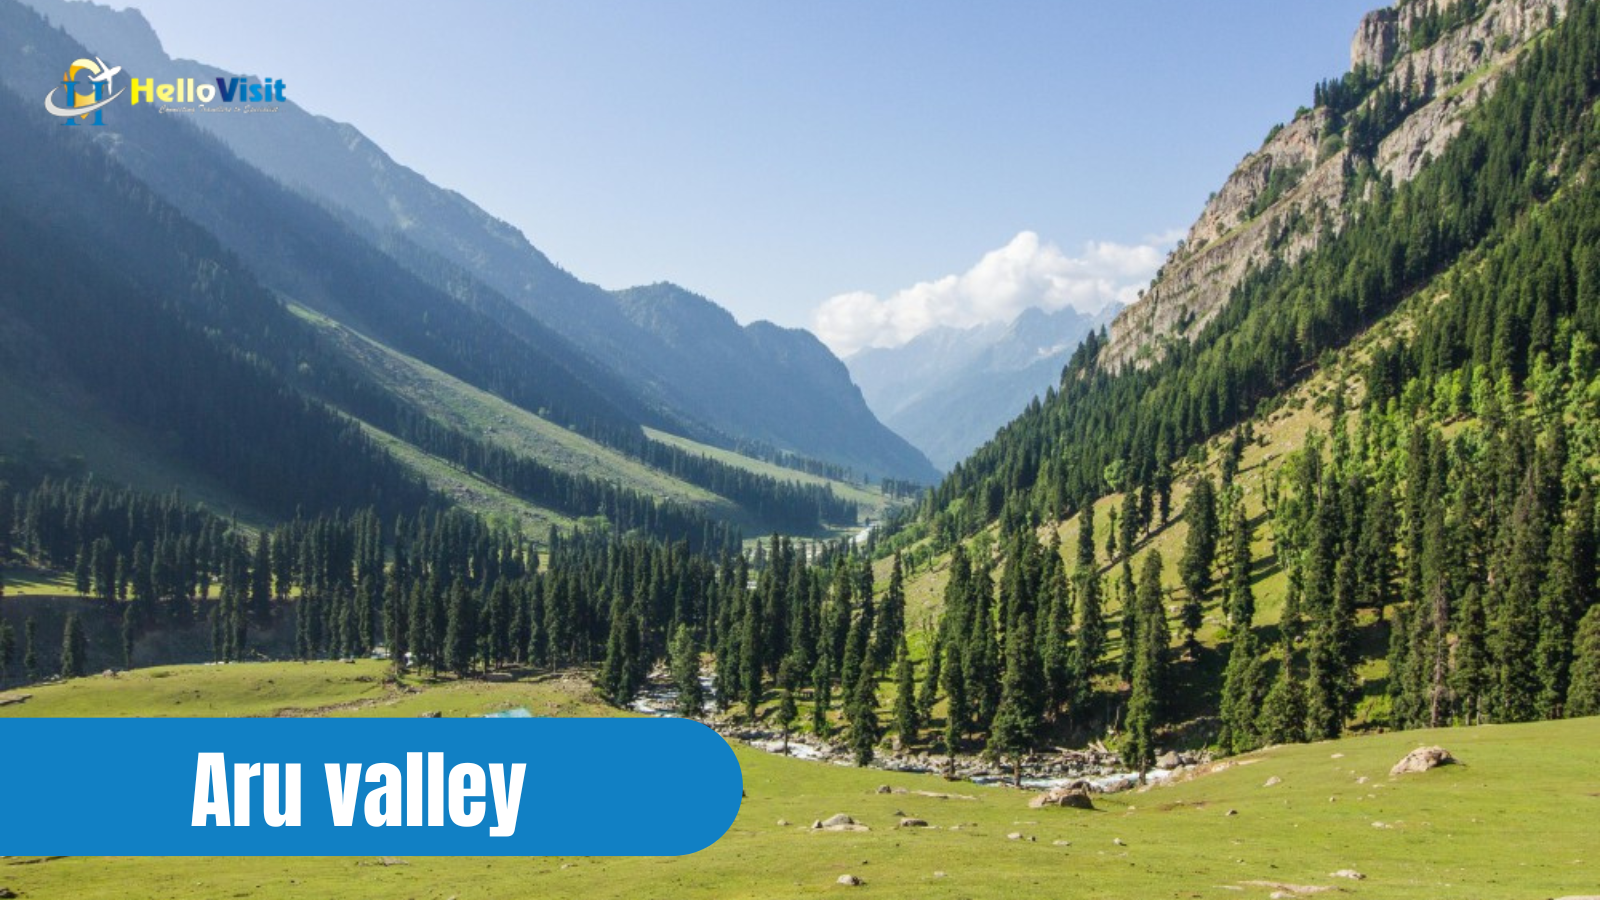 Aru valley, Jammu and Kashmir